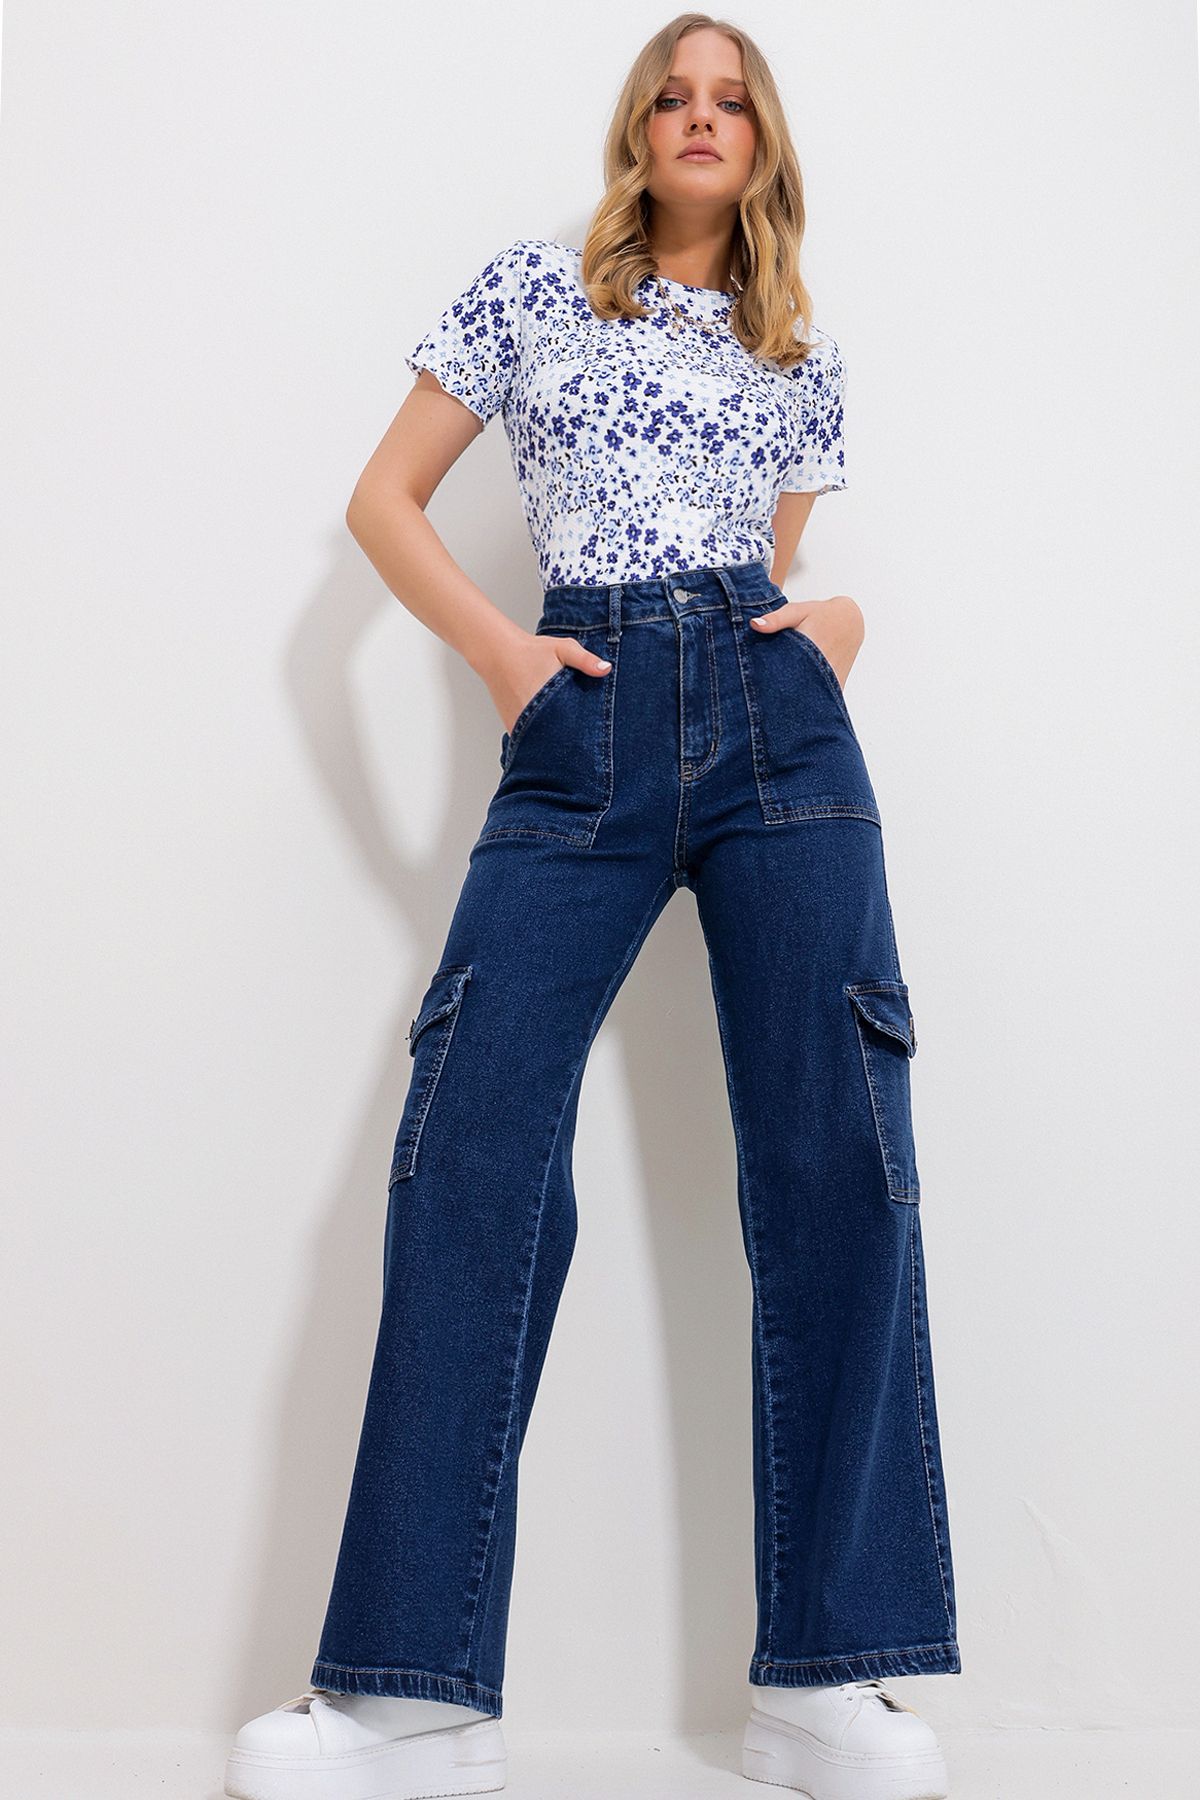 Trend Alaçatı Stili Kadın Koyu Mavi Yüksek Bel Kargo Cepli Geniş Paça Denim Pantolon Alc-X11758